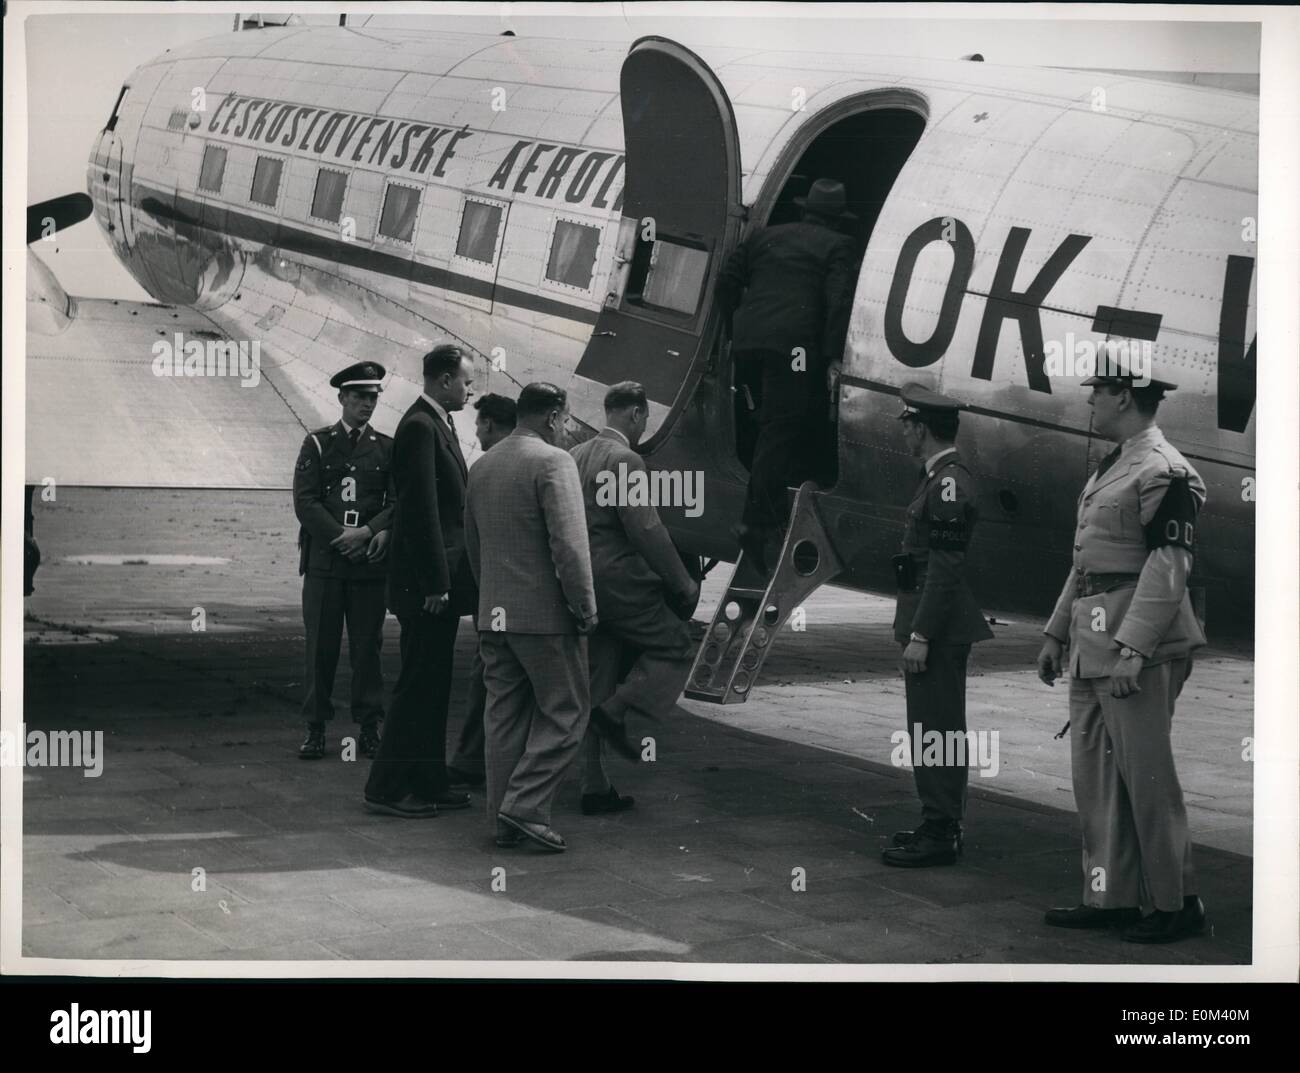 Mai 05, 1953 - Tzech sont remis. Le Tzechoslovakian aircraft qui a un groupe de réfugiés Tzech à la république fédérale sur Marh 23, 1953 a été remis aux représentant du gouvernement Tzech, sur l'aéroport Templehof (Berlin) à-jour. Photo montre le Tzechoslovacian returnflight l'équipage à bord pour aller à Banque D'Images